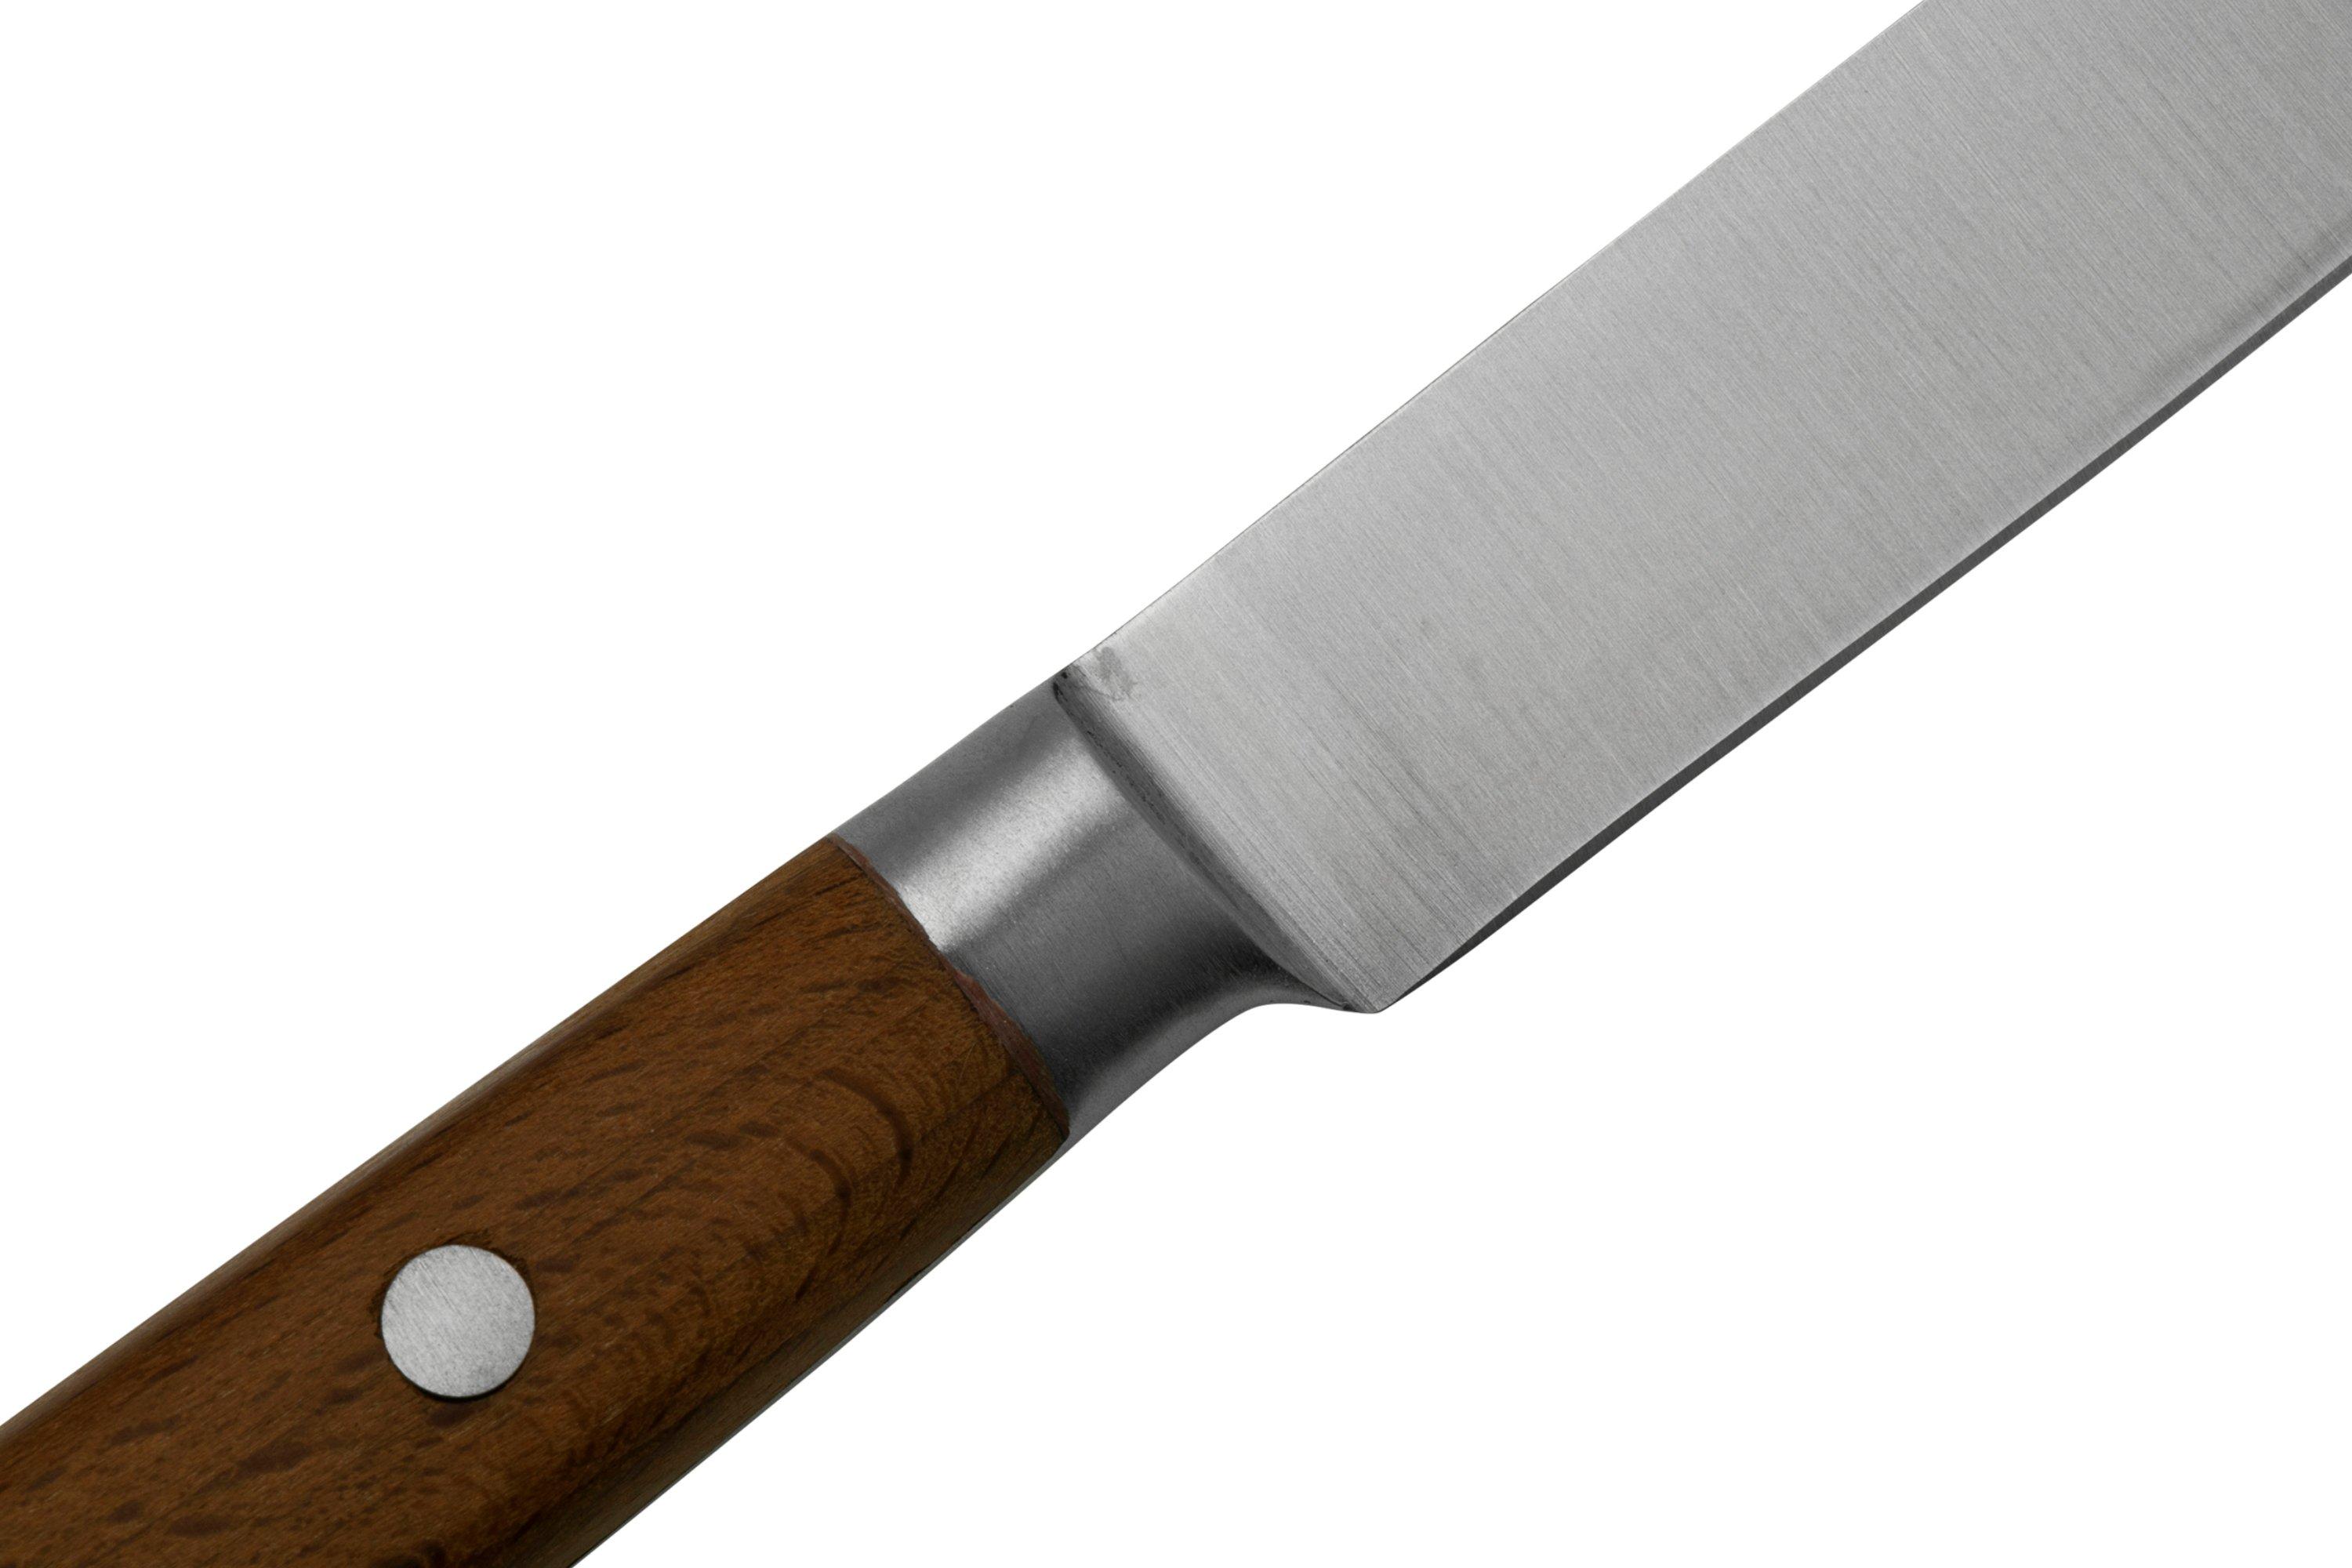 Couteaux de table Steak Country - Hêtre - Sabatier K